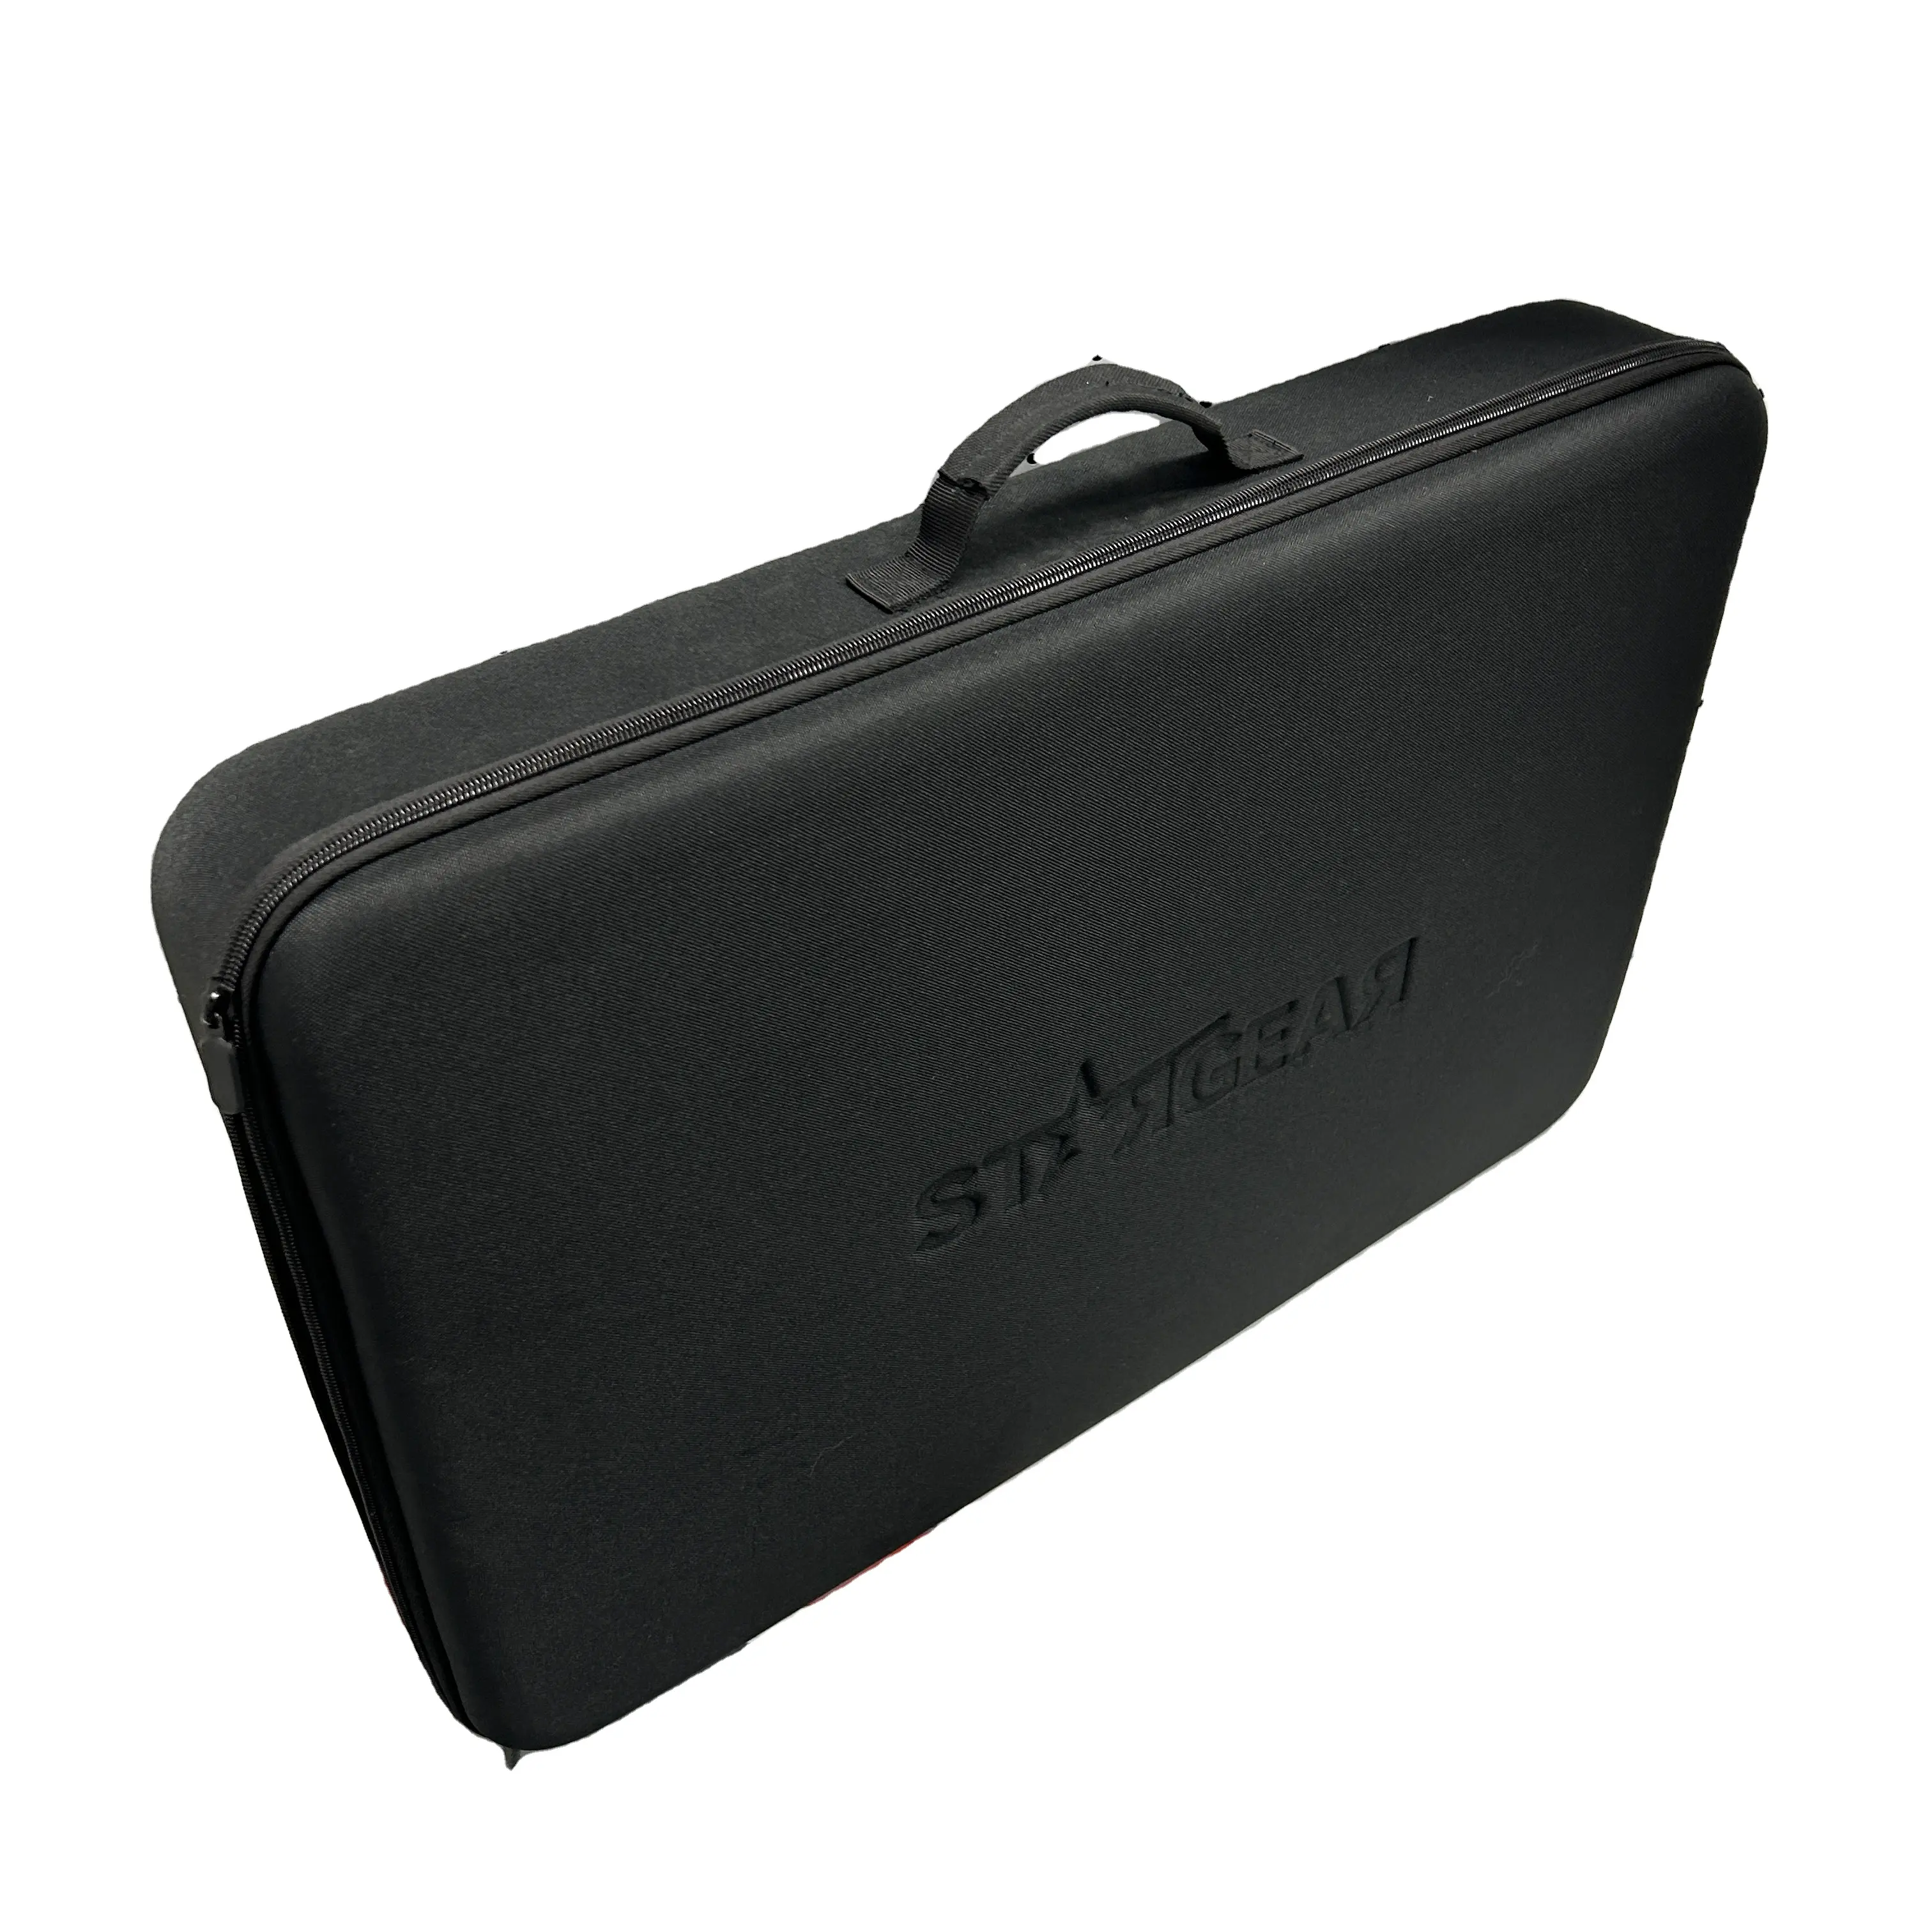 Starlink Bag Suitable for Starlink Satellite V3 Portable Storage Bag Travel Case Starlink Gen 3 Bag Accessories